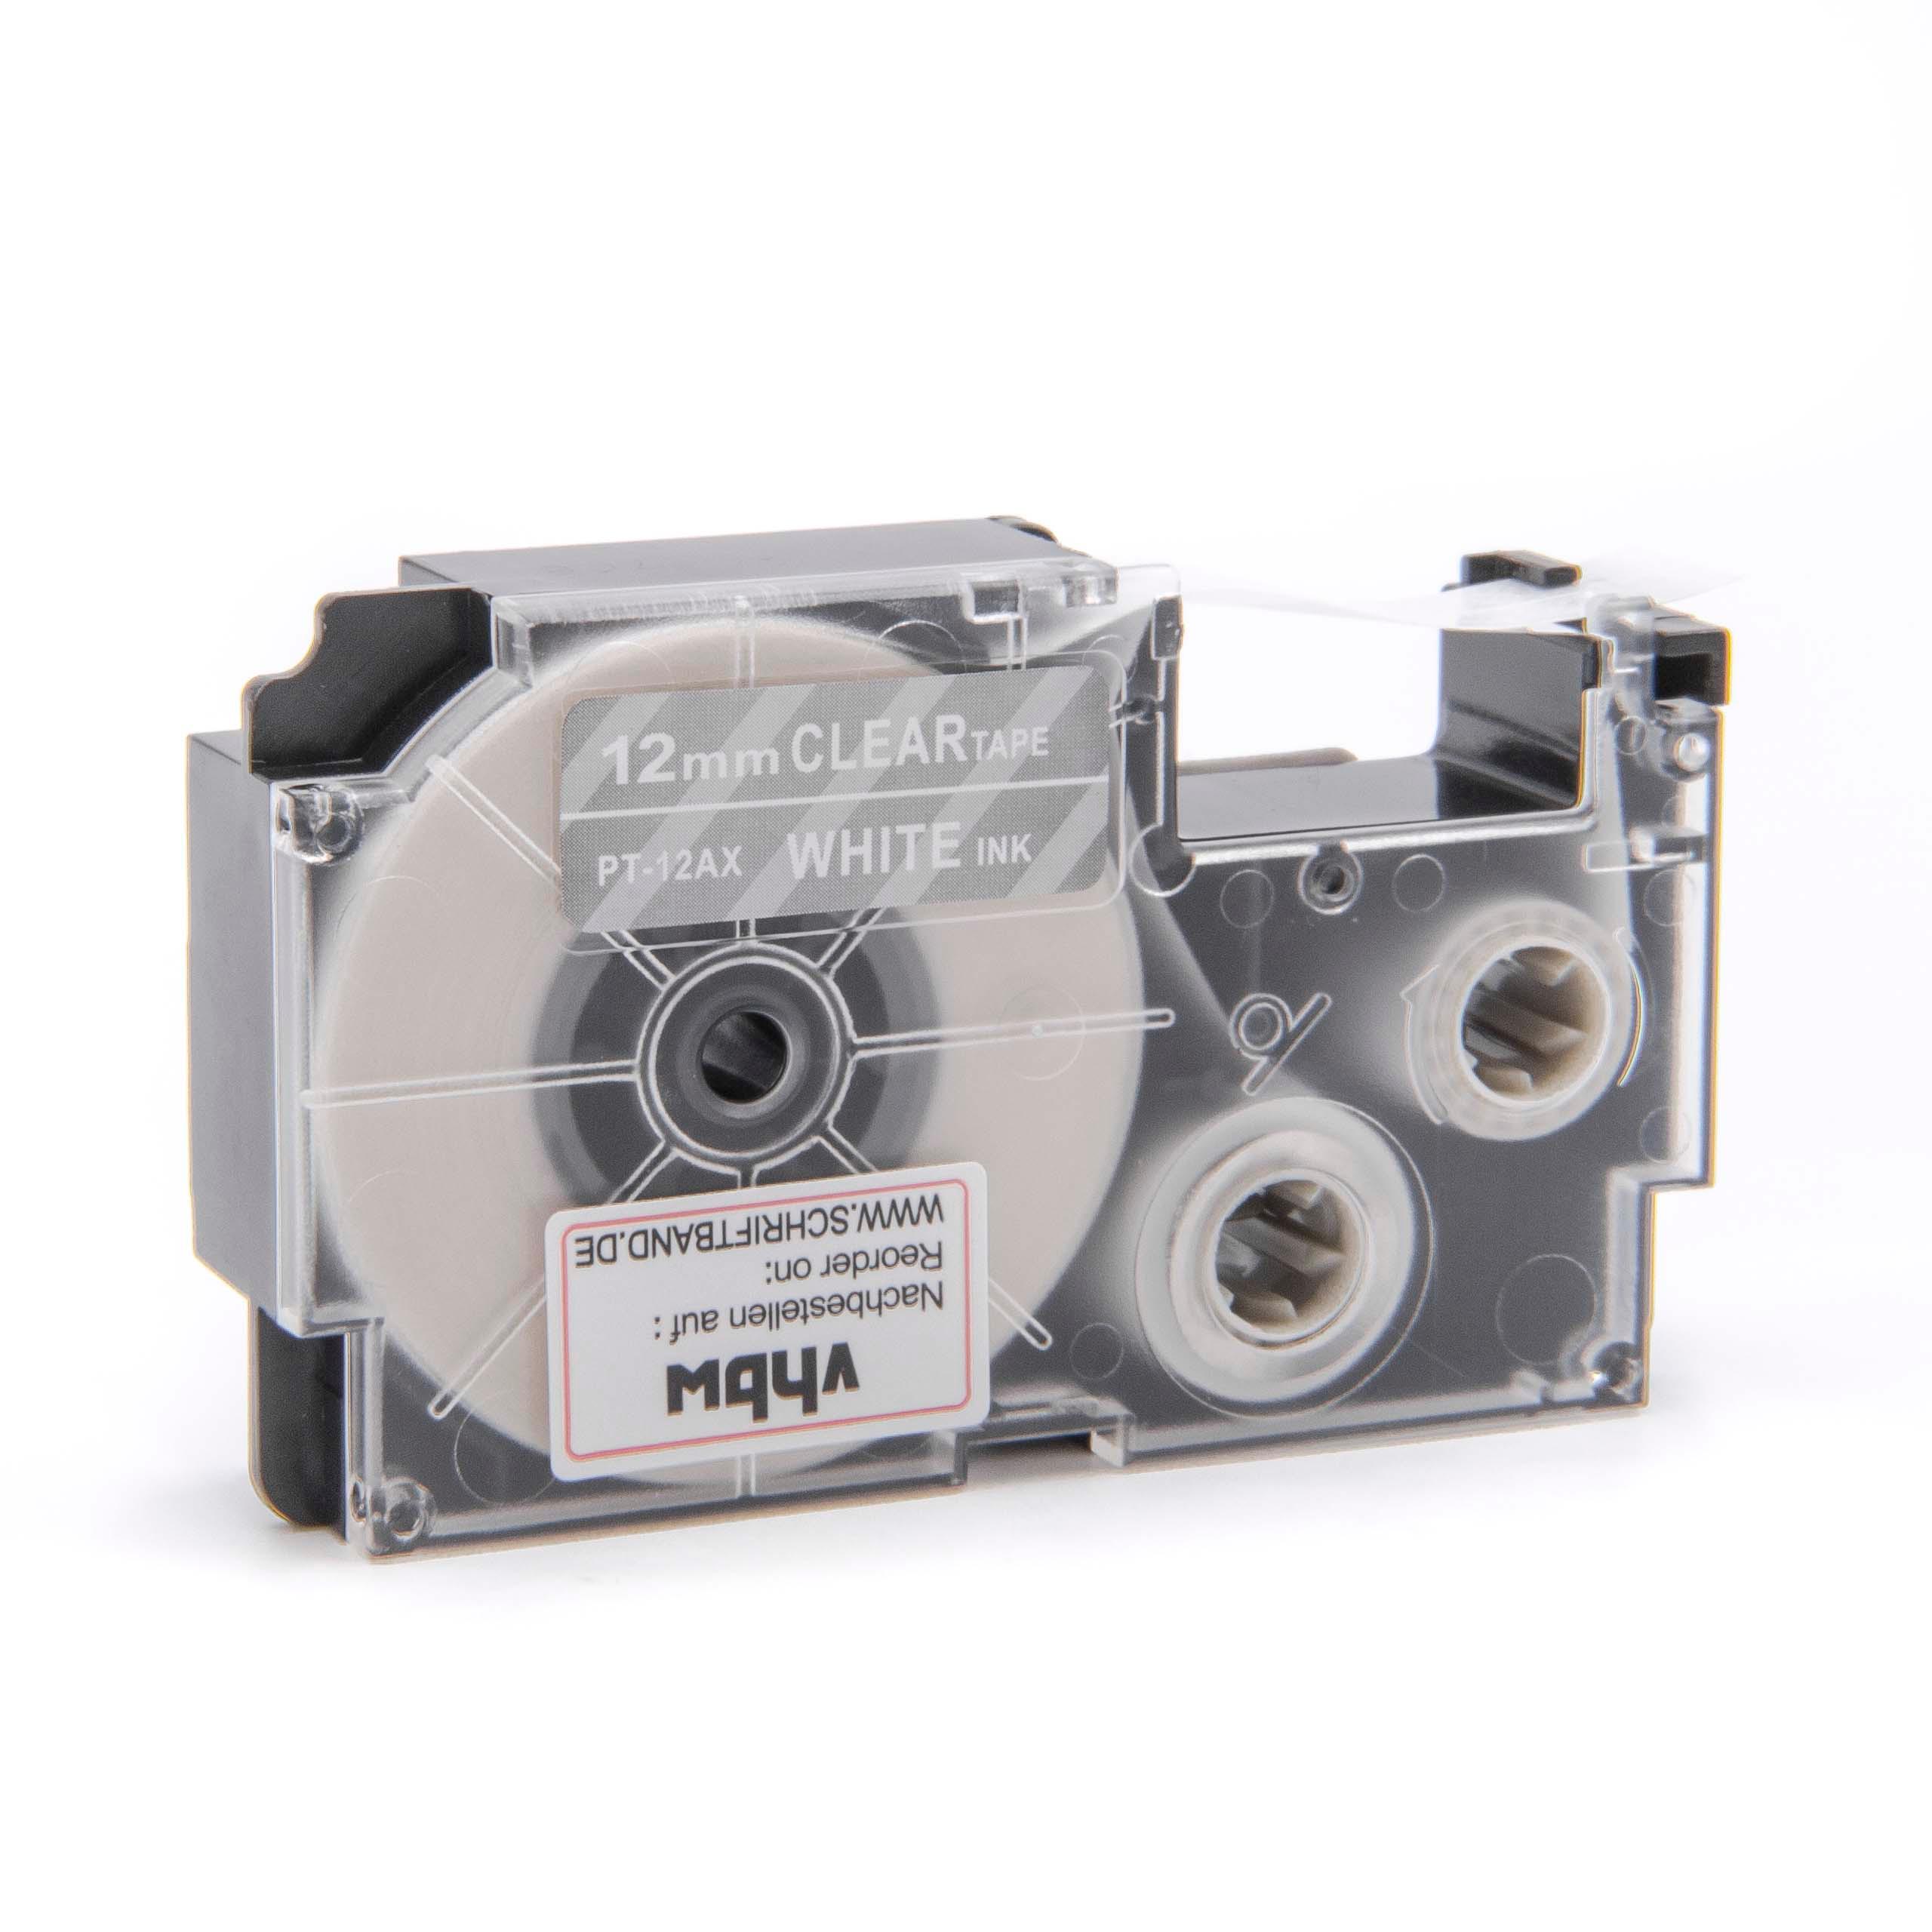 Cassetta nastro sostituisce Casio XR-12AX, XR-12AX1 per etichettatrice Casio 12mm bianco su trasparente